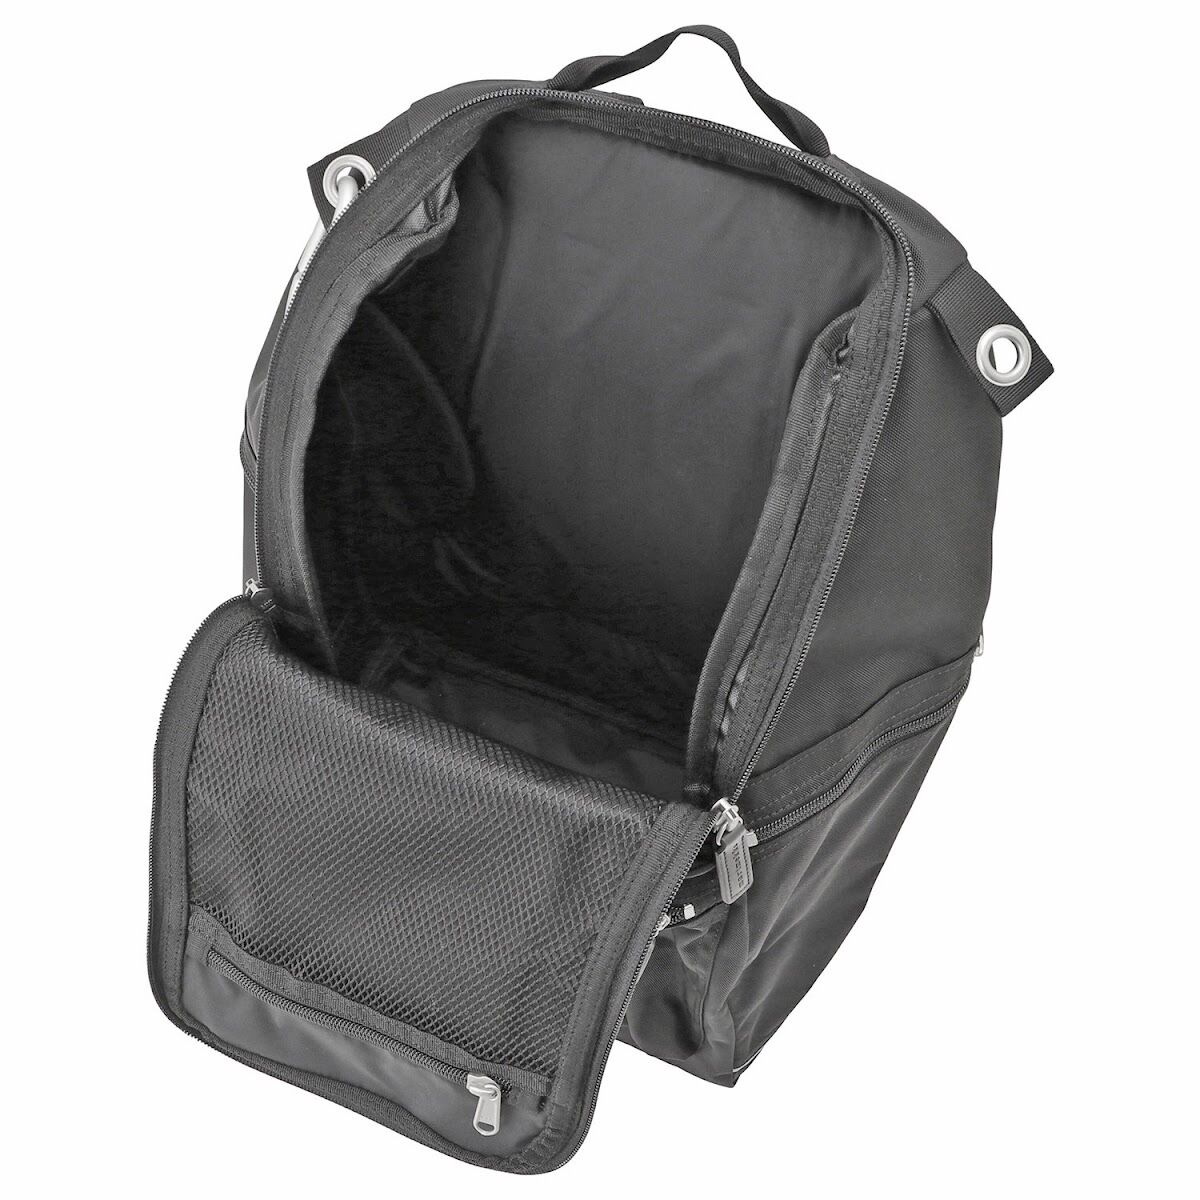 マリメッコ marimekko 026994 999 バディ バックパック リュックサック ブラック レディース メンズ ユニセックス Buddy  backpack